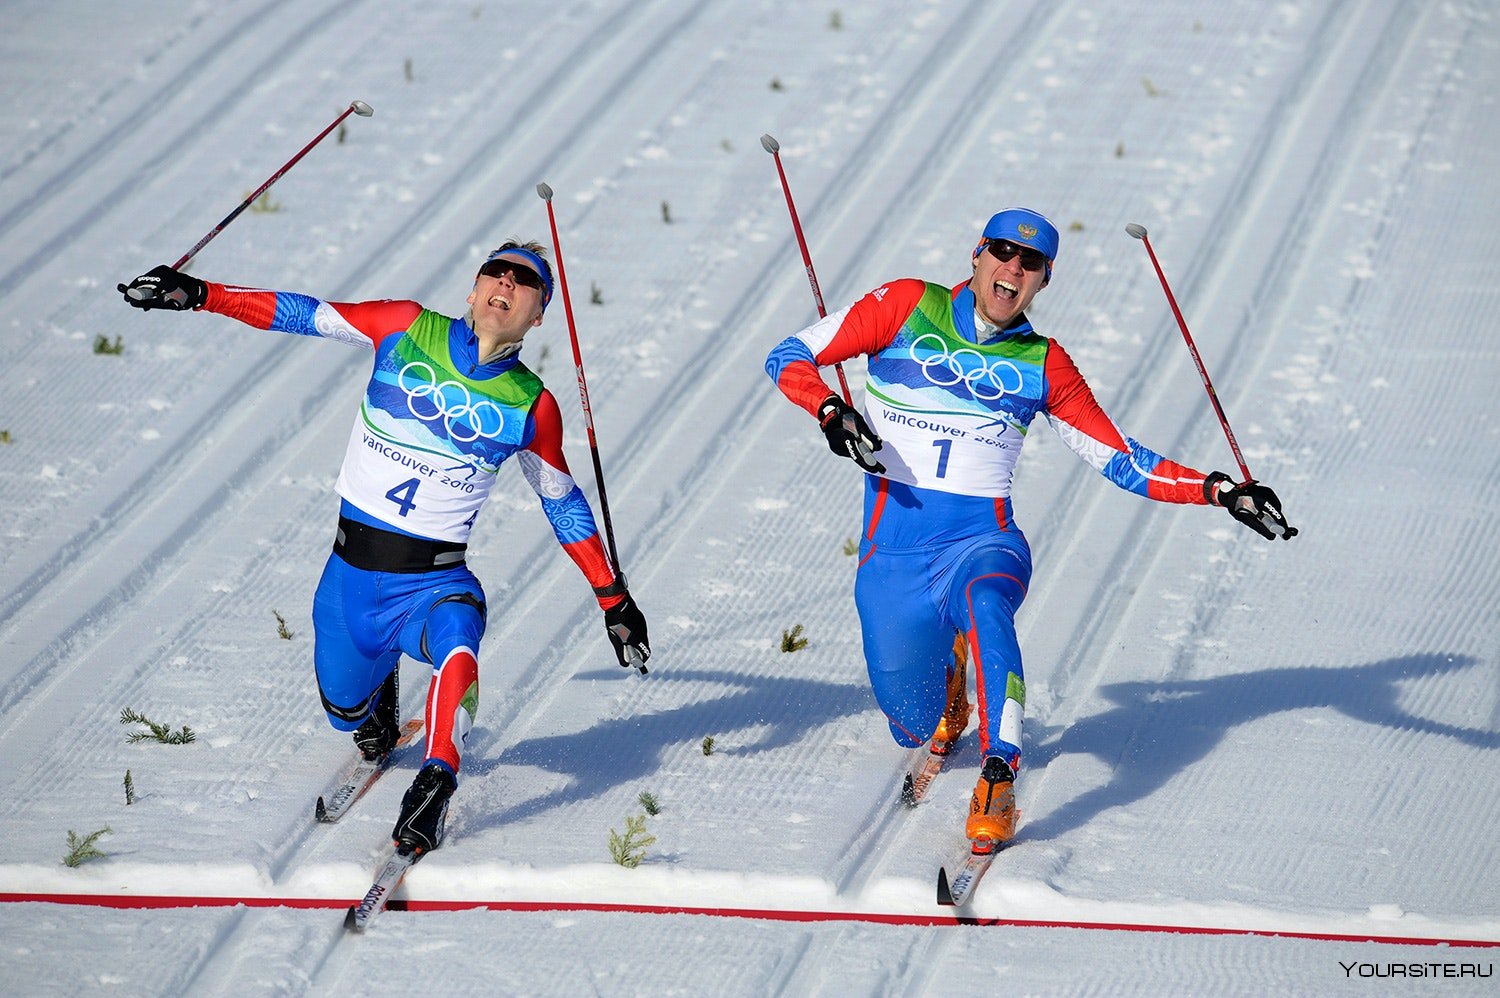 Три лыжных спортсмена. Спортсмен лыжник. Лыжники России. Лыжный спорт в России.